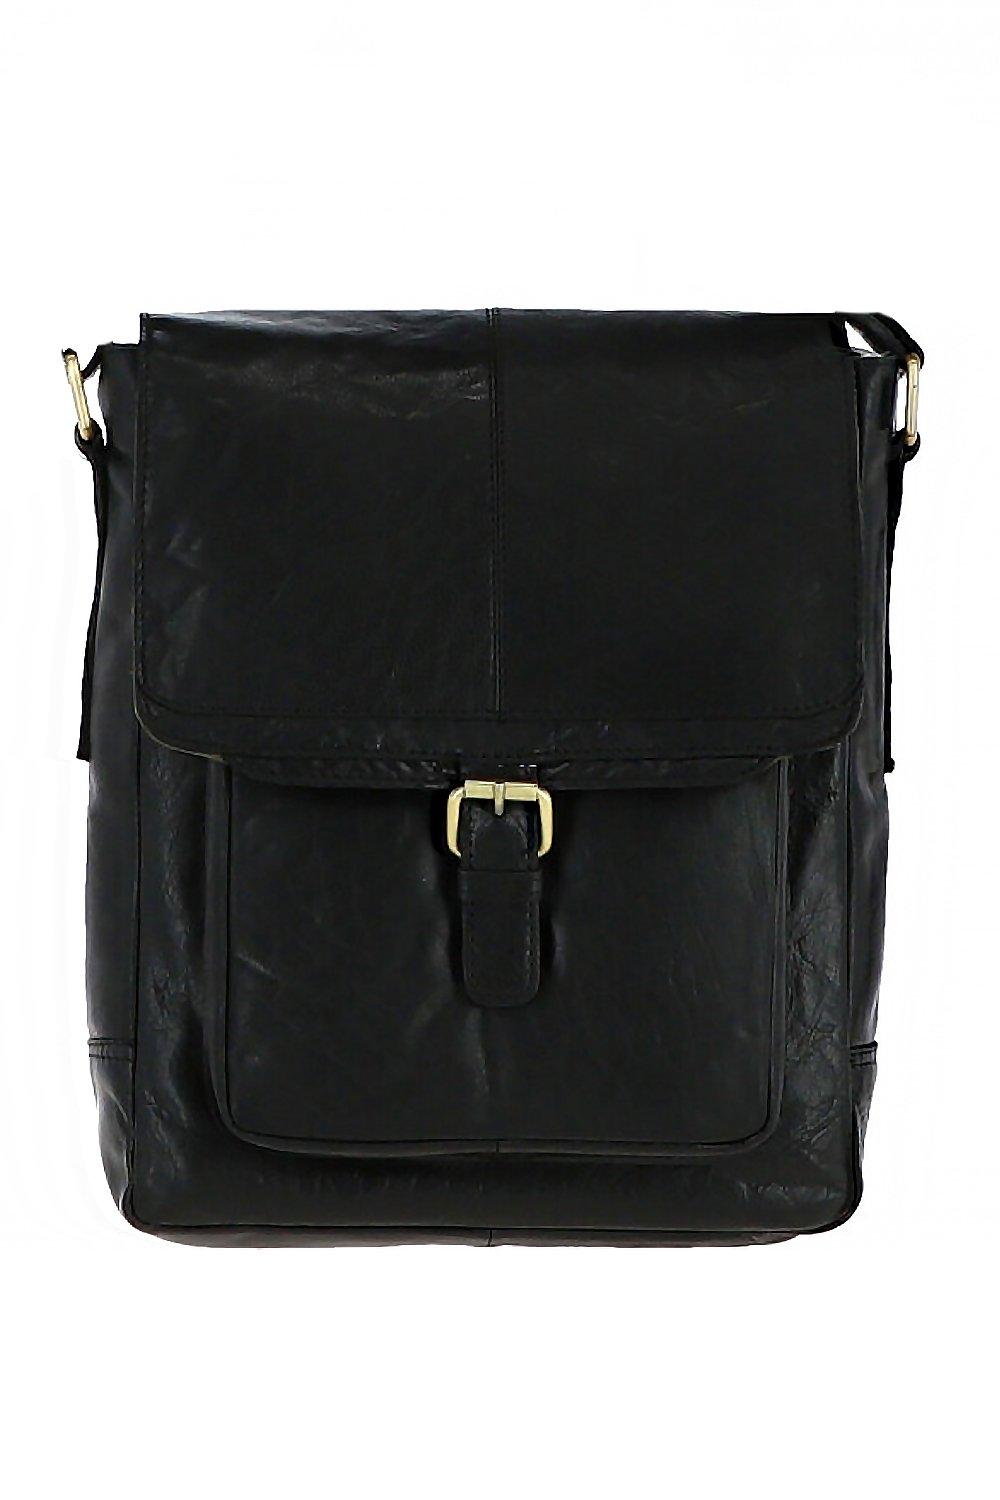 Дорожная сумка из винтажной кожи среднего размера Ashwood Leather, черный сумка поясная повседневная натуральная кожа внутренний карман регулируемый ремень коричневый